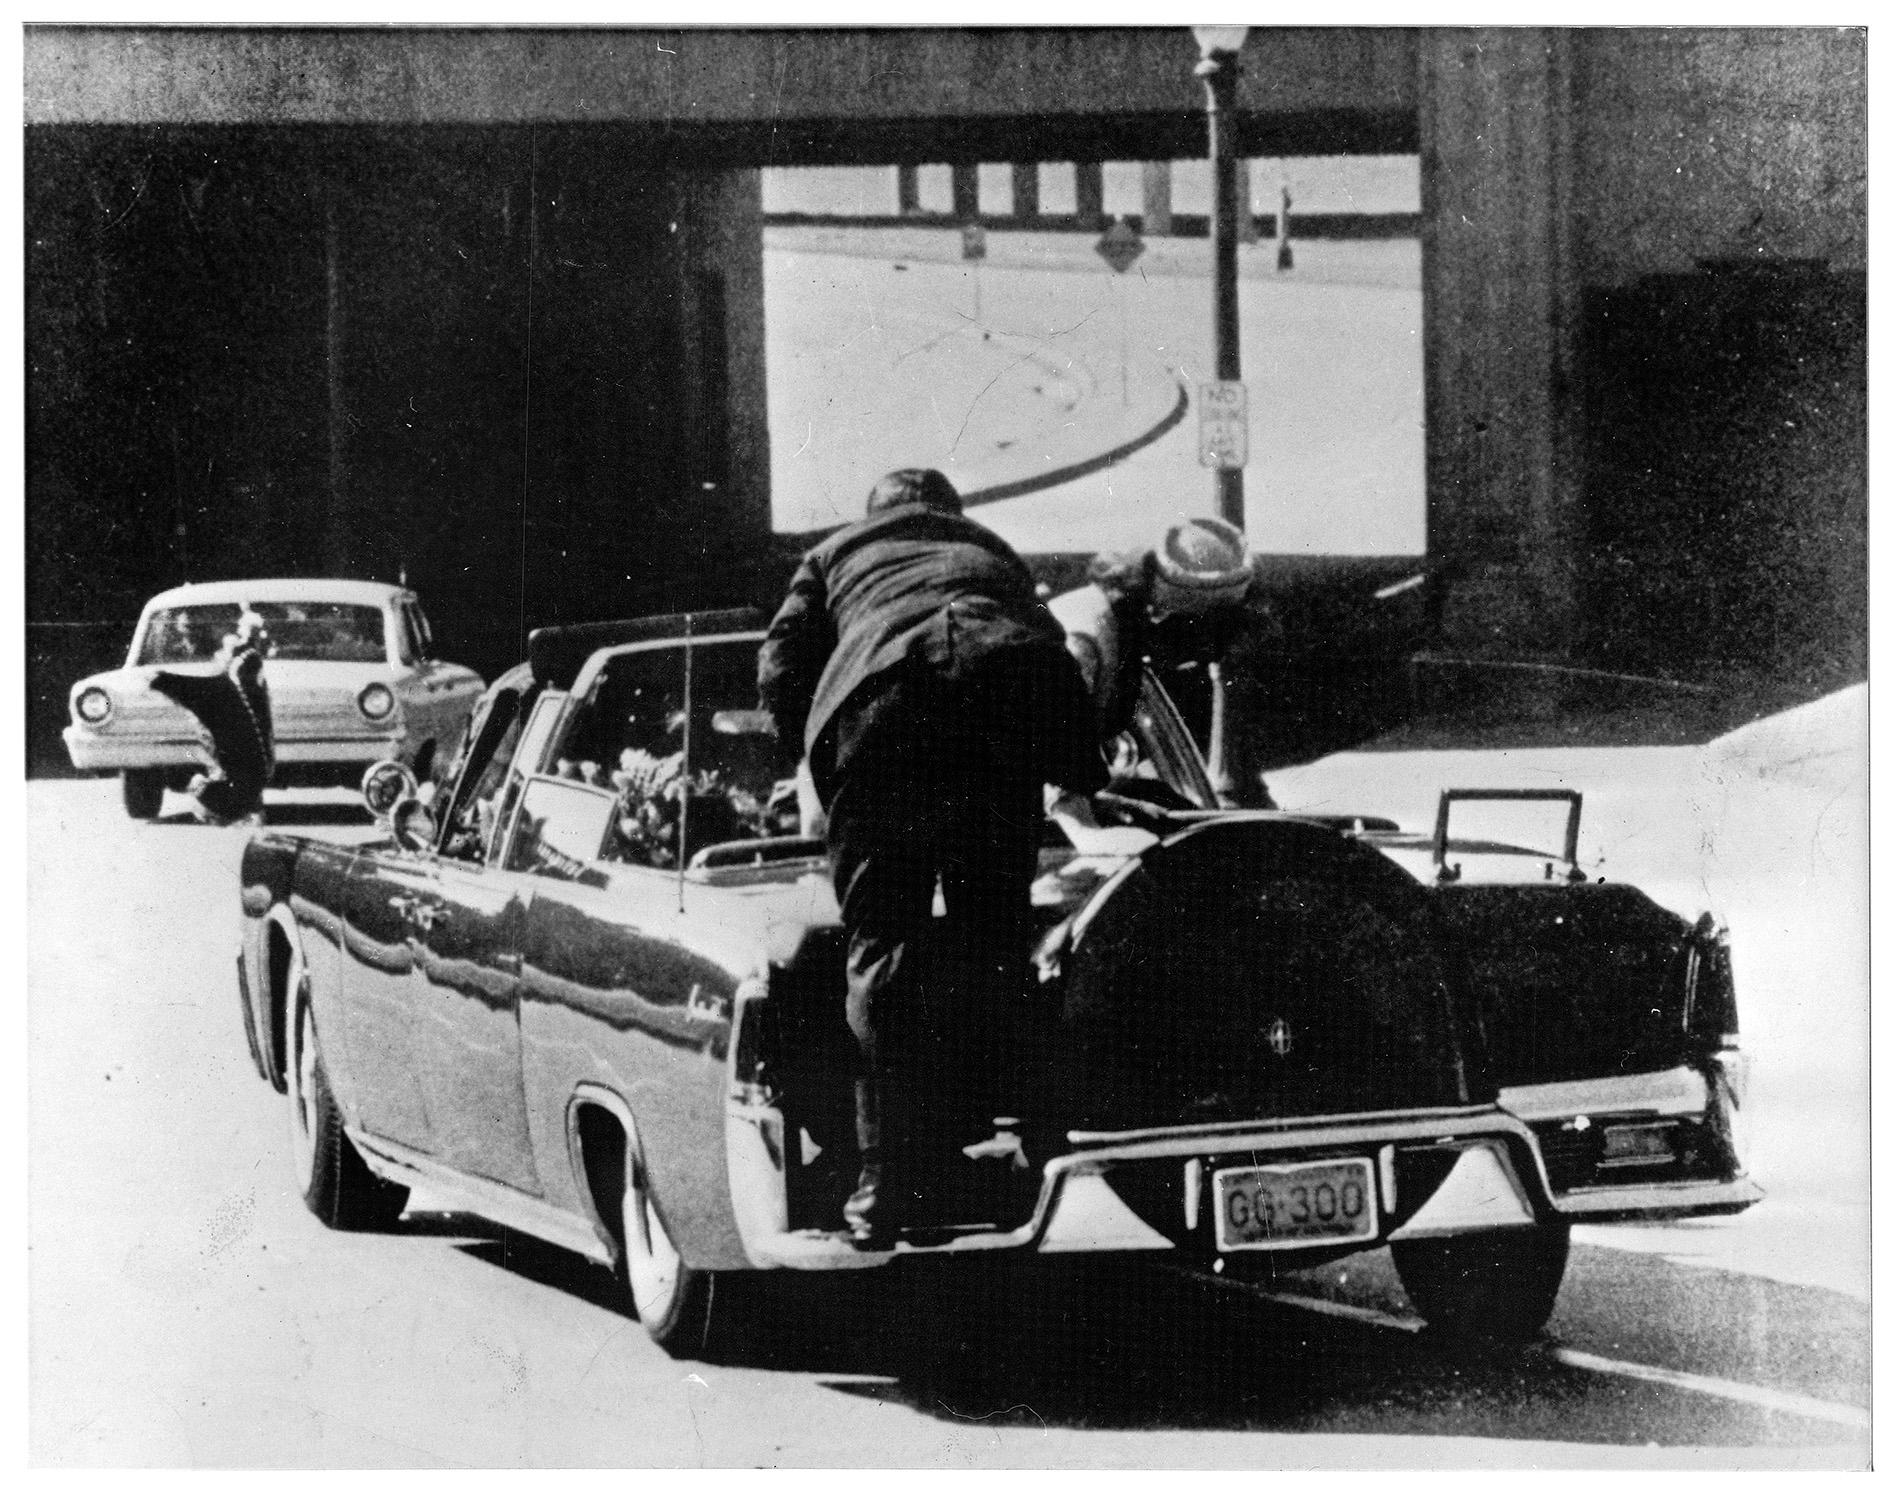 Precis efter skottet har fallit när Kennedy mördades i Dallas.